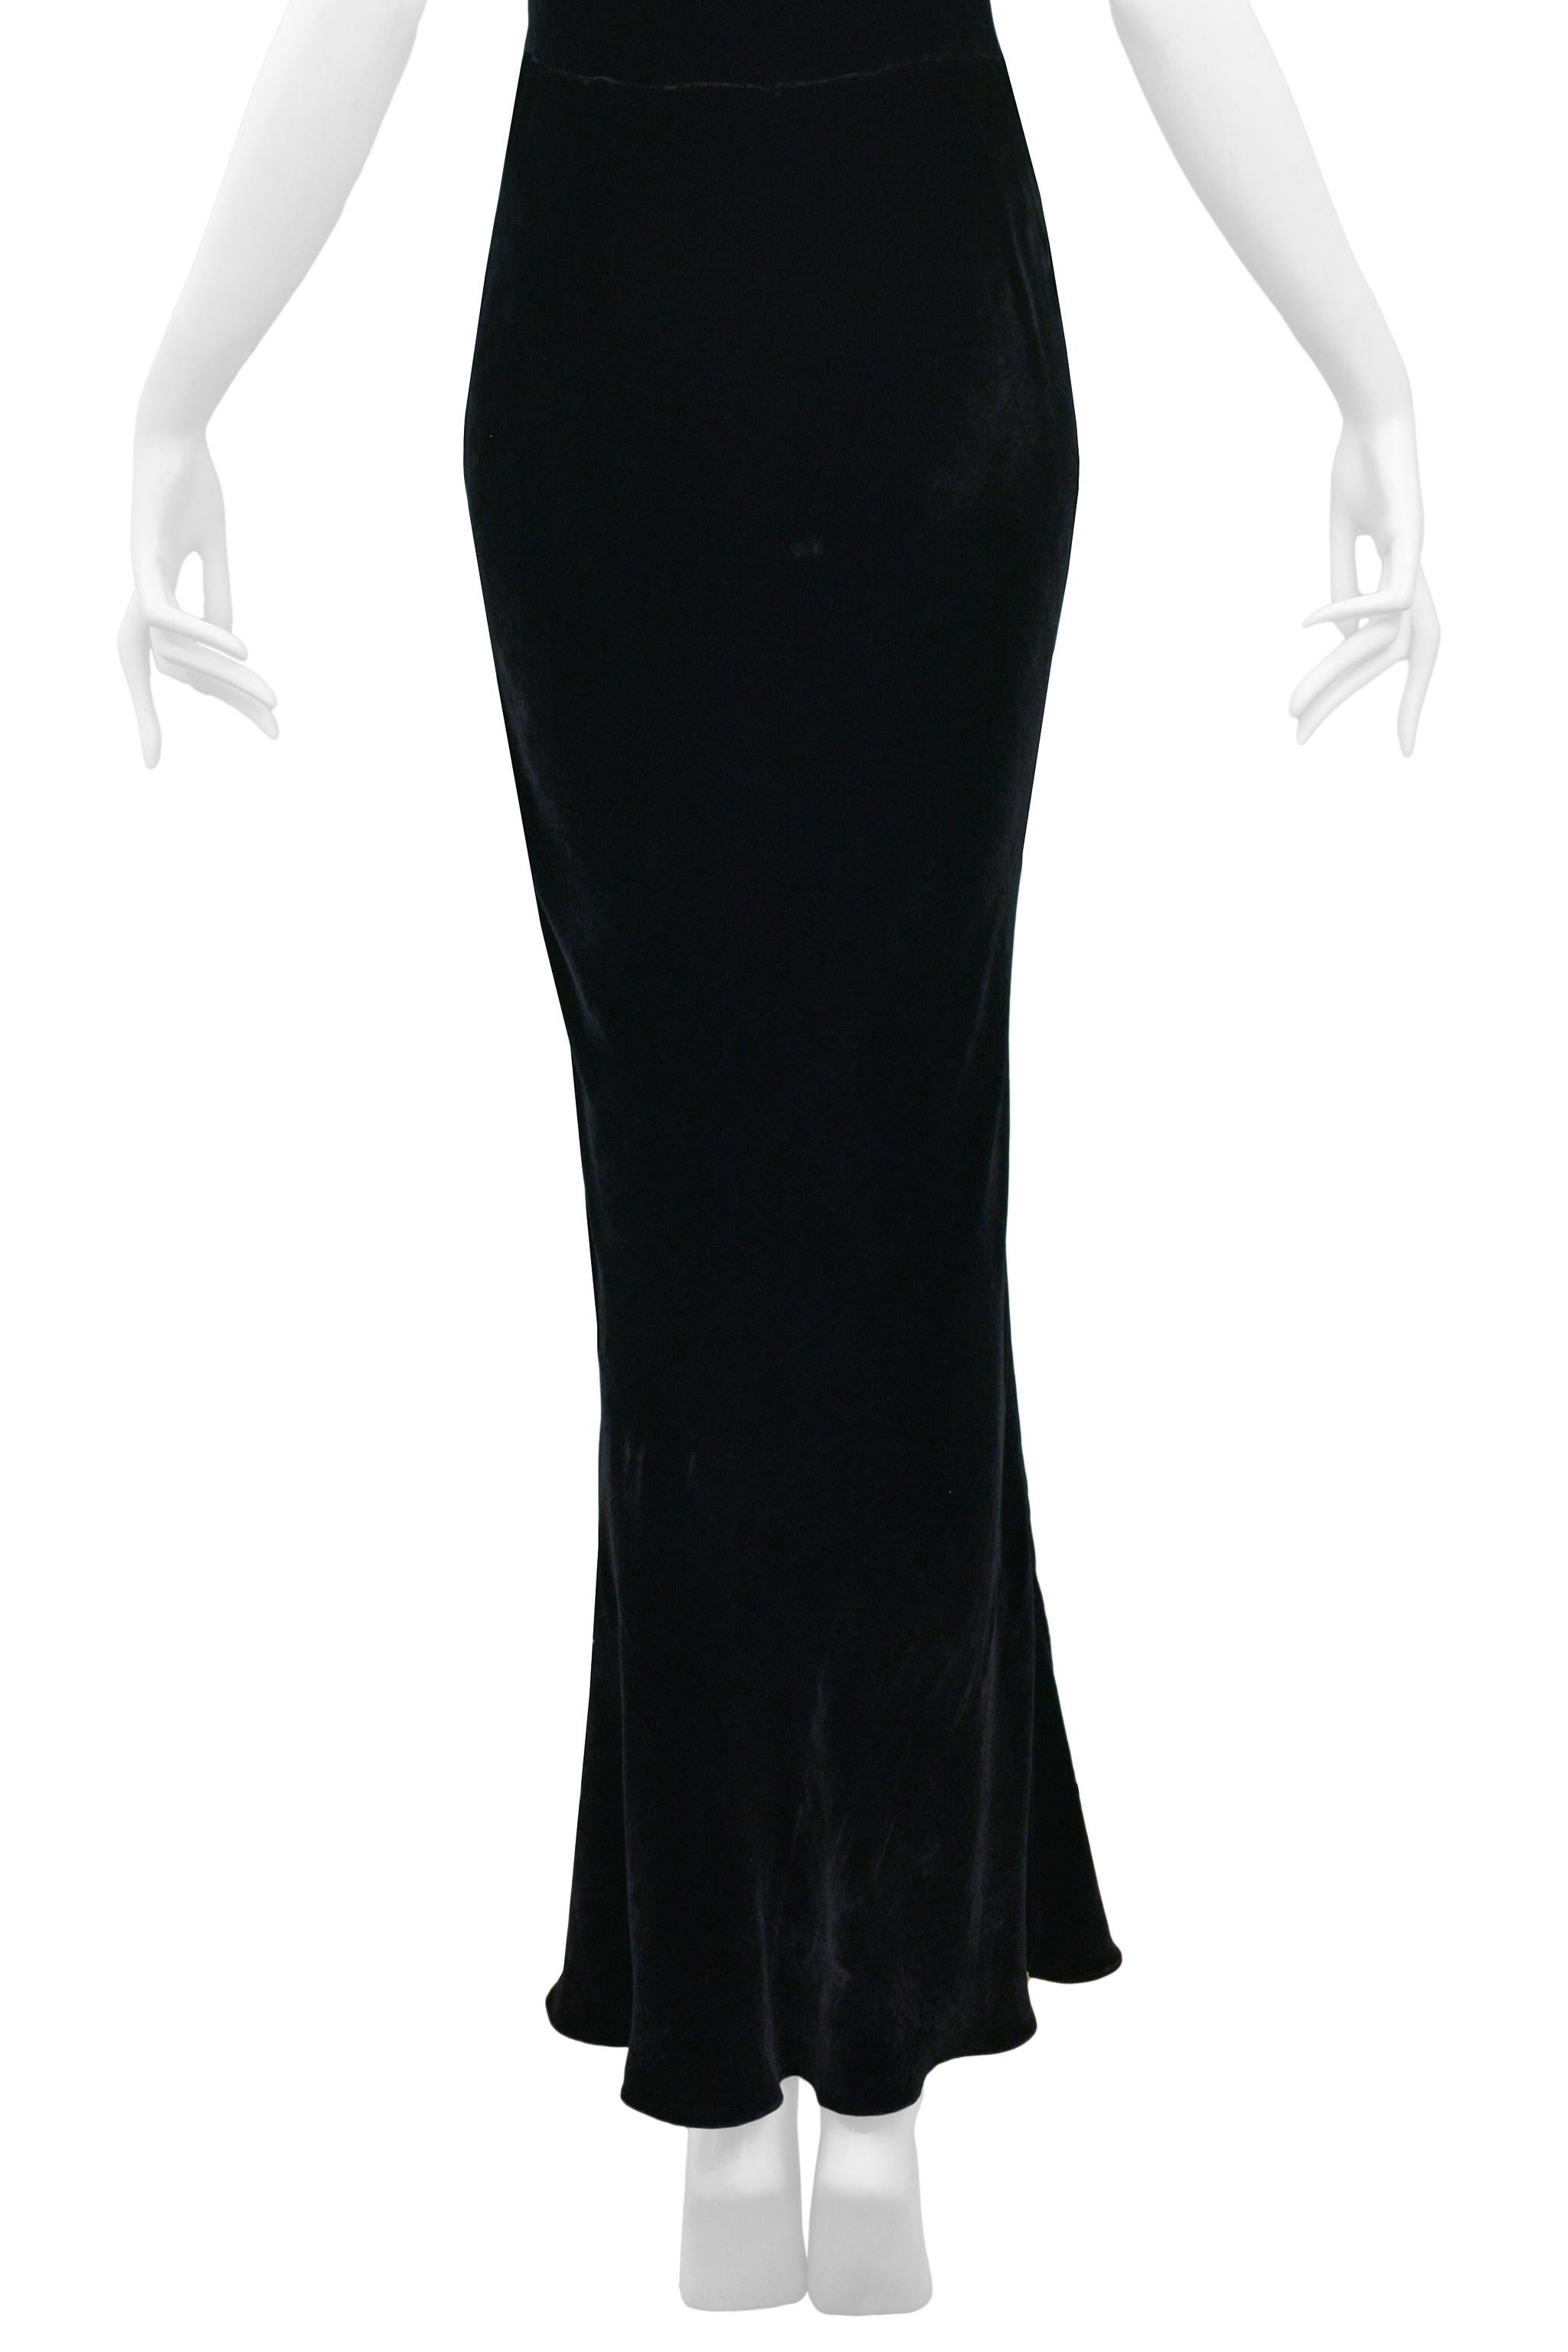 the black velvet gown